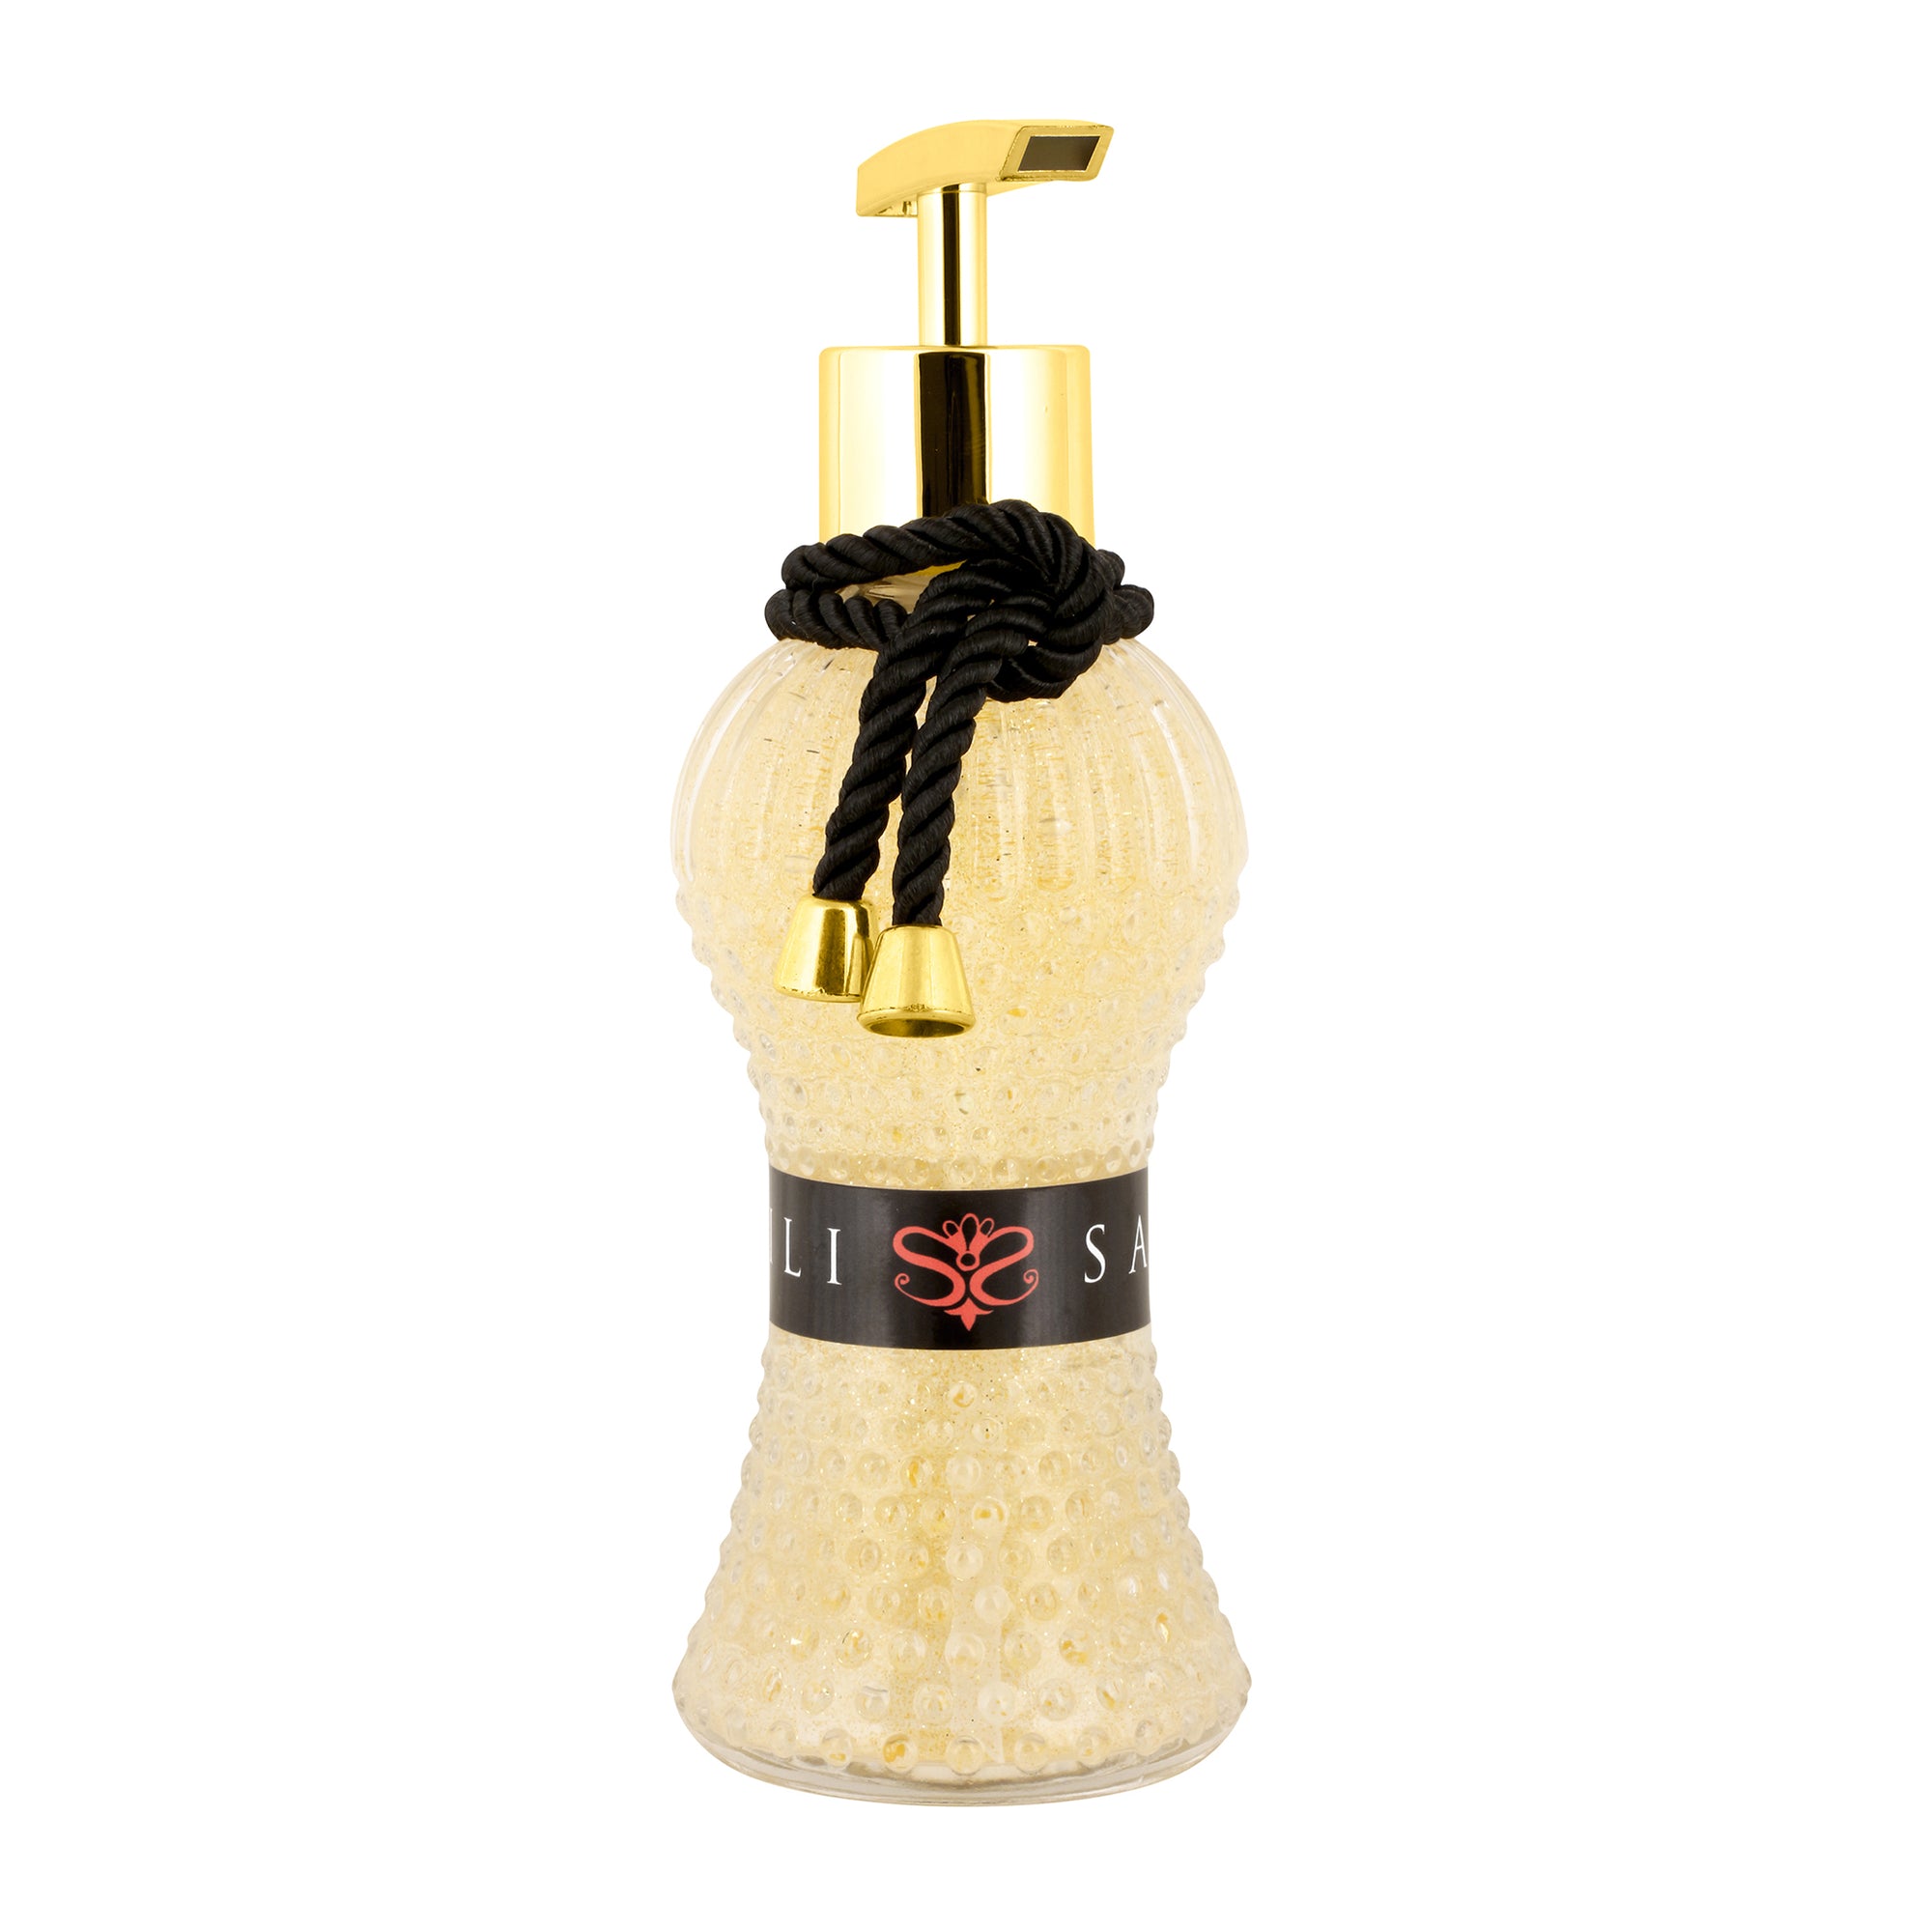 Sabonete Liquido com Perfume Exclusivo da Lili Sampedro em um Frasco de Vidro Texturizado